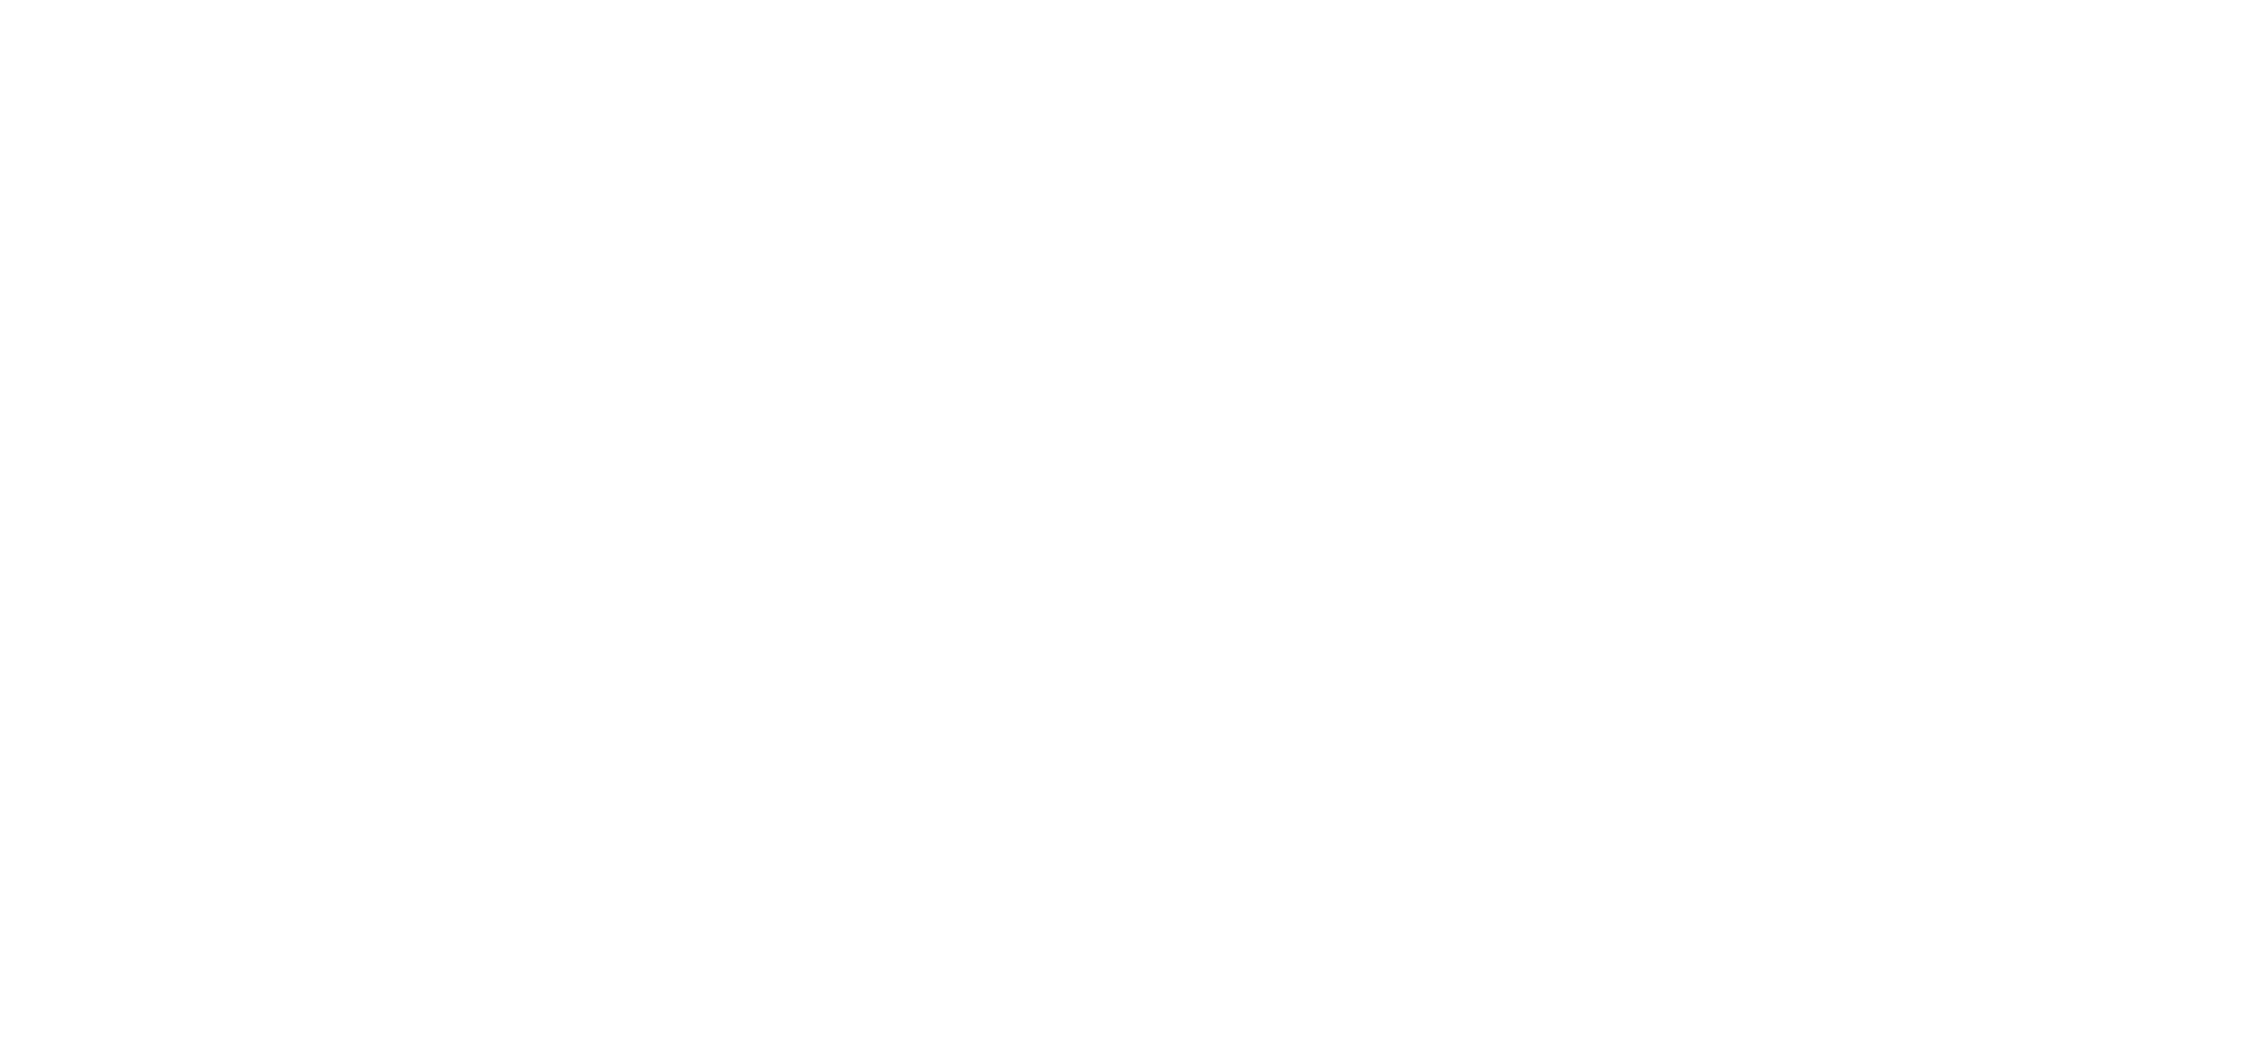 Vapur Seferlerü Haberleri - İz Gazete - İzmir'in Gazetesi